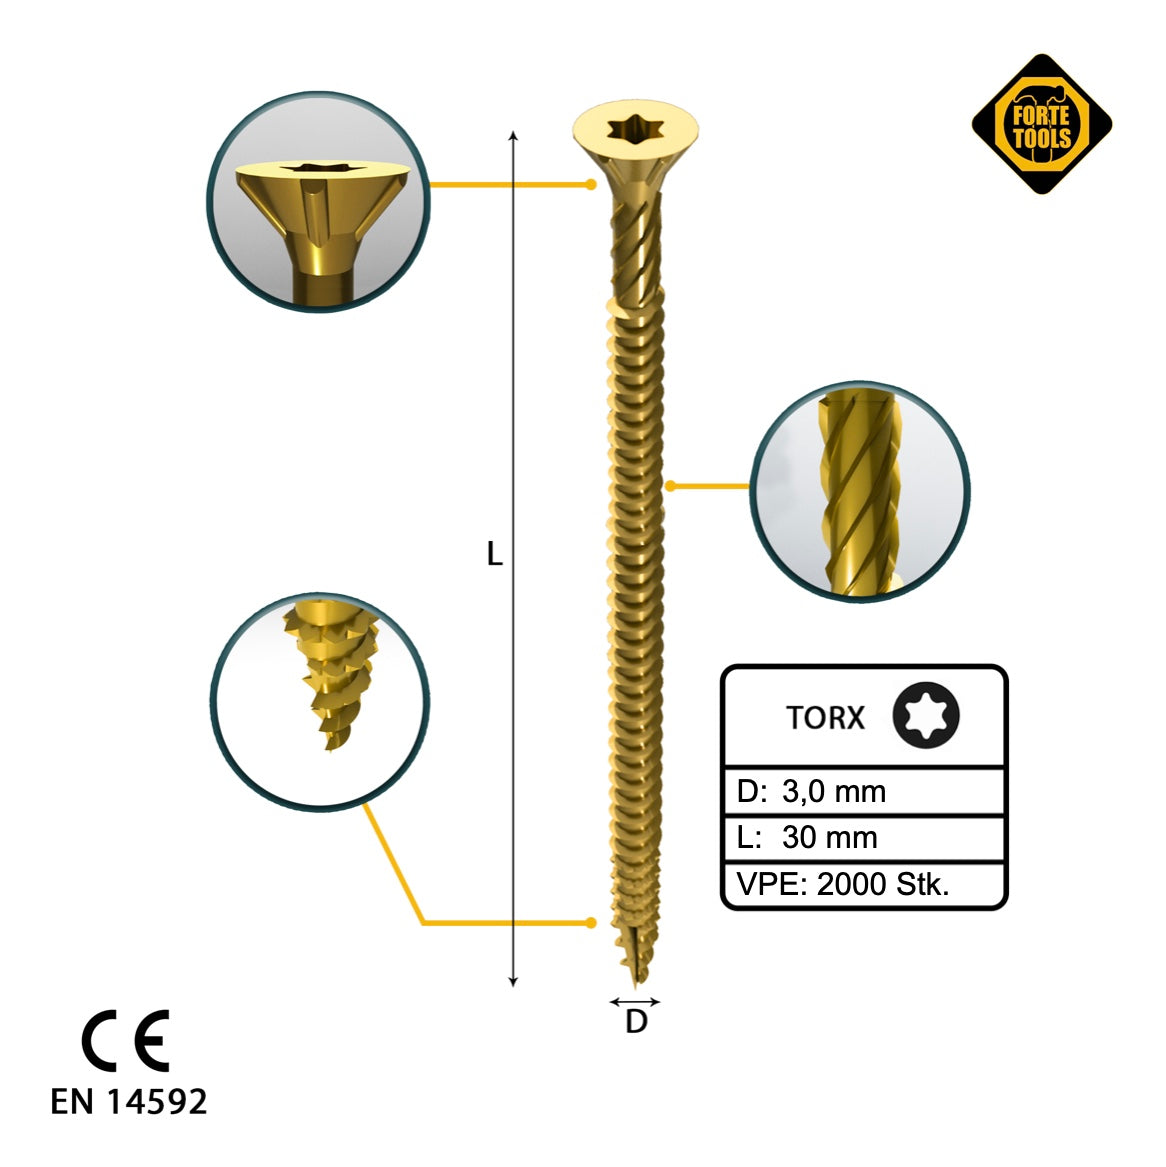 FORTE Tools Universal Holzschraube 3,0 x 30 mm T10 2000 Stk. ( 4x 000051399464 ) gelb verzinkt Torx Senkkopf Vollgewinde